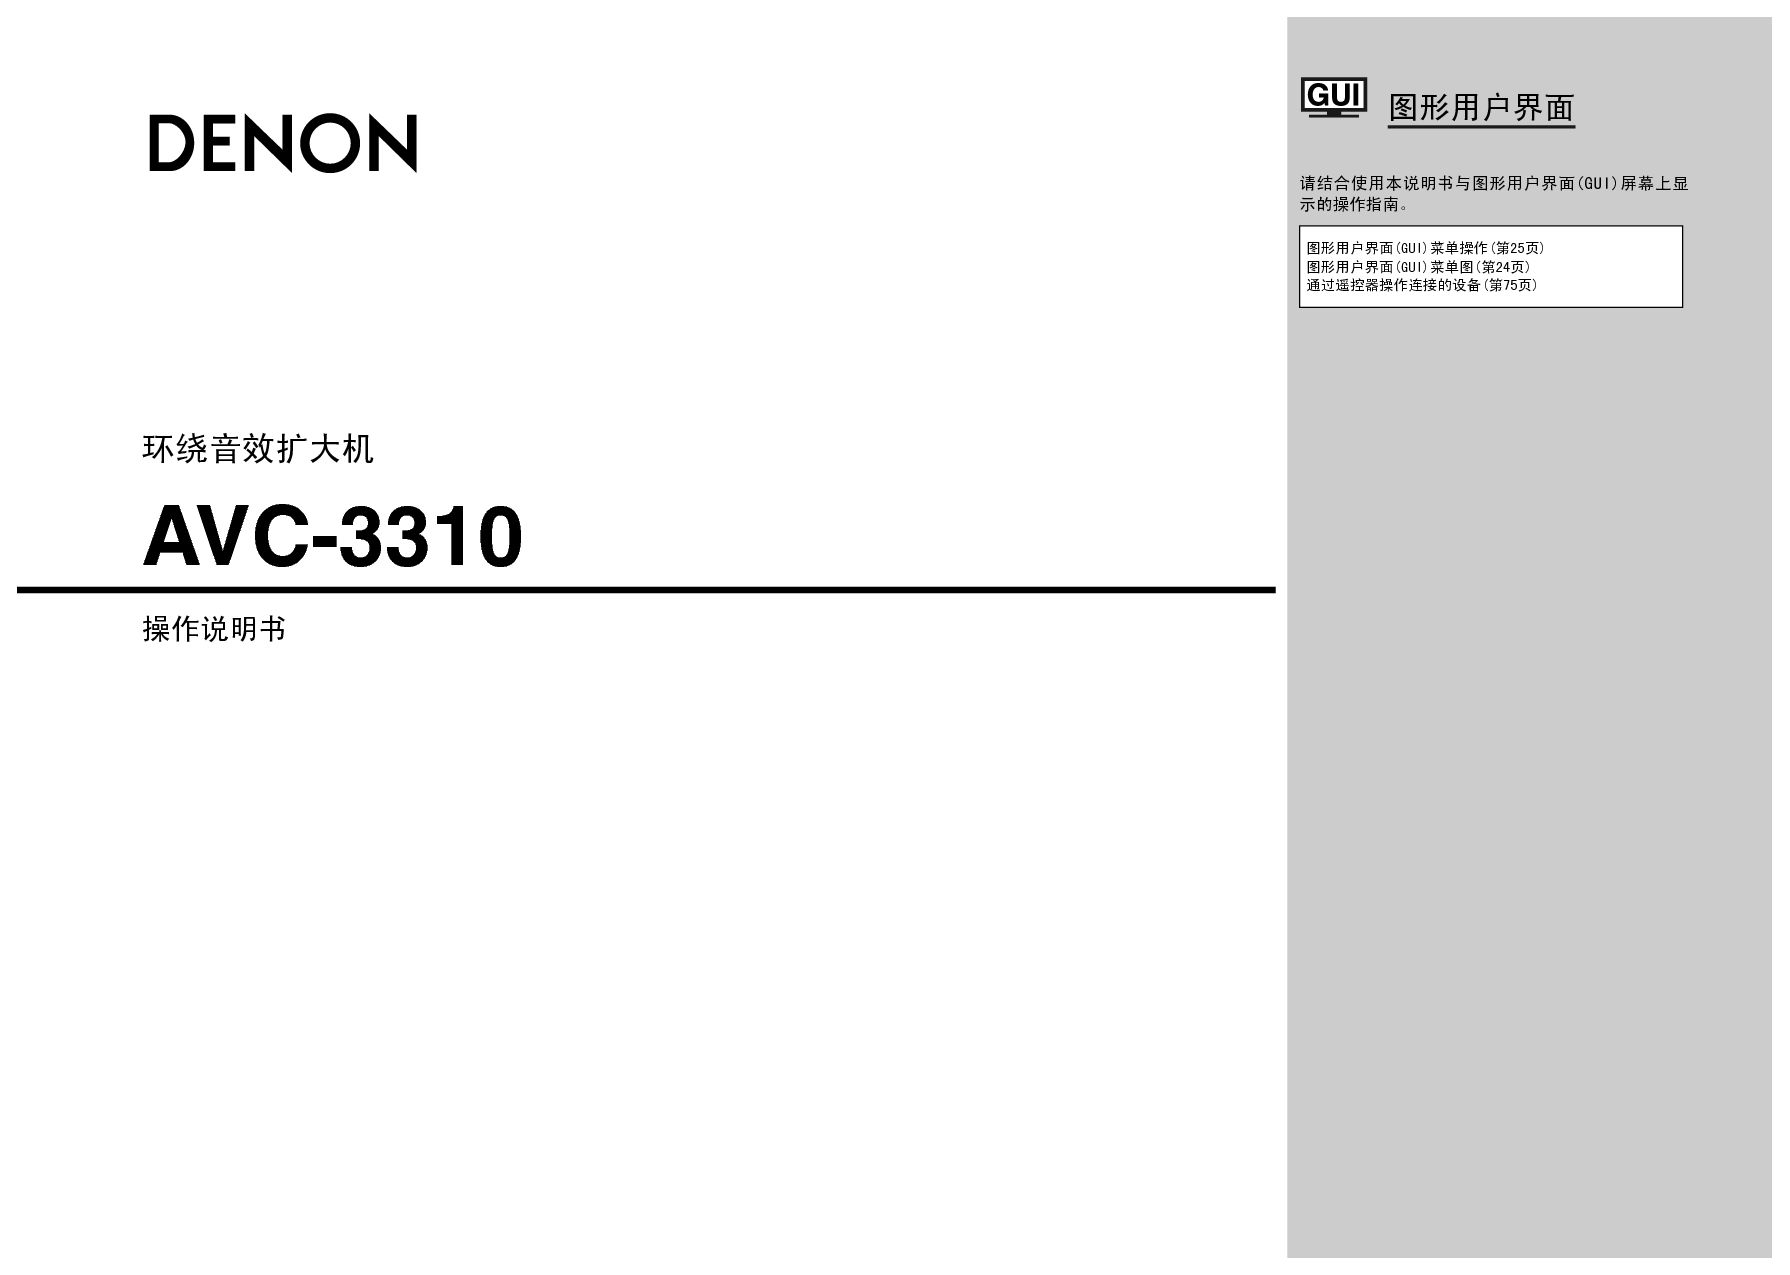 天龙 Denon AVC-3310 说明书 封面